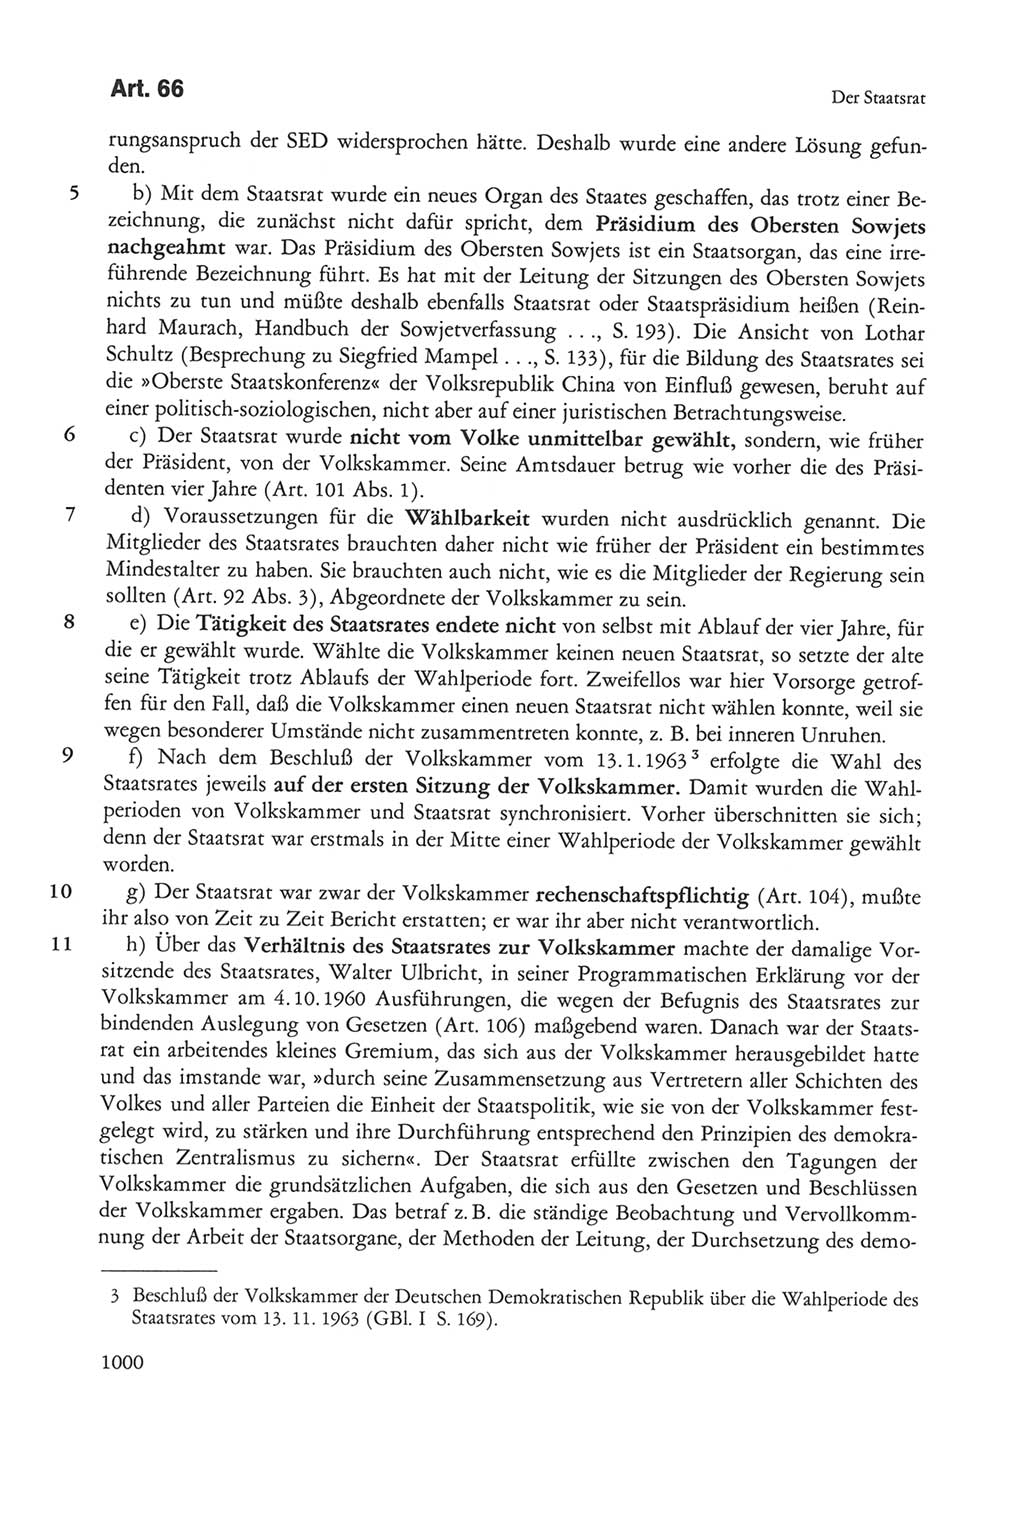 Die sozialistische Verfassung der Deutschen Demokratischen Republik (DDR), Kommentar 1982, Seite 1000 (Soz. Verf. DDR Komm. 1982, S. 1000)